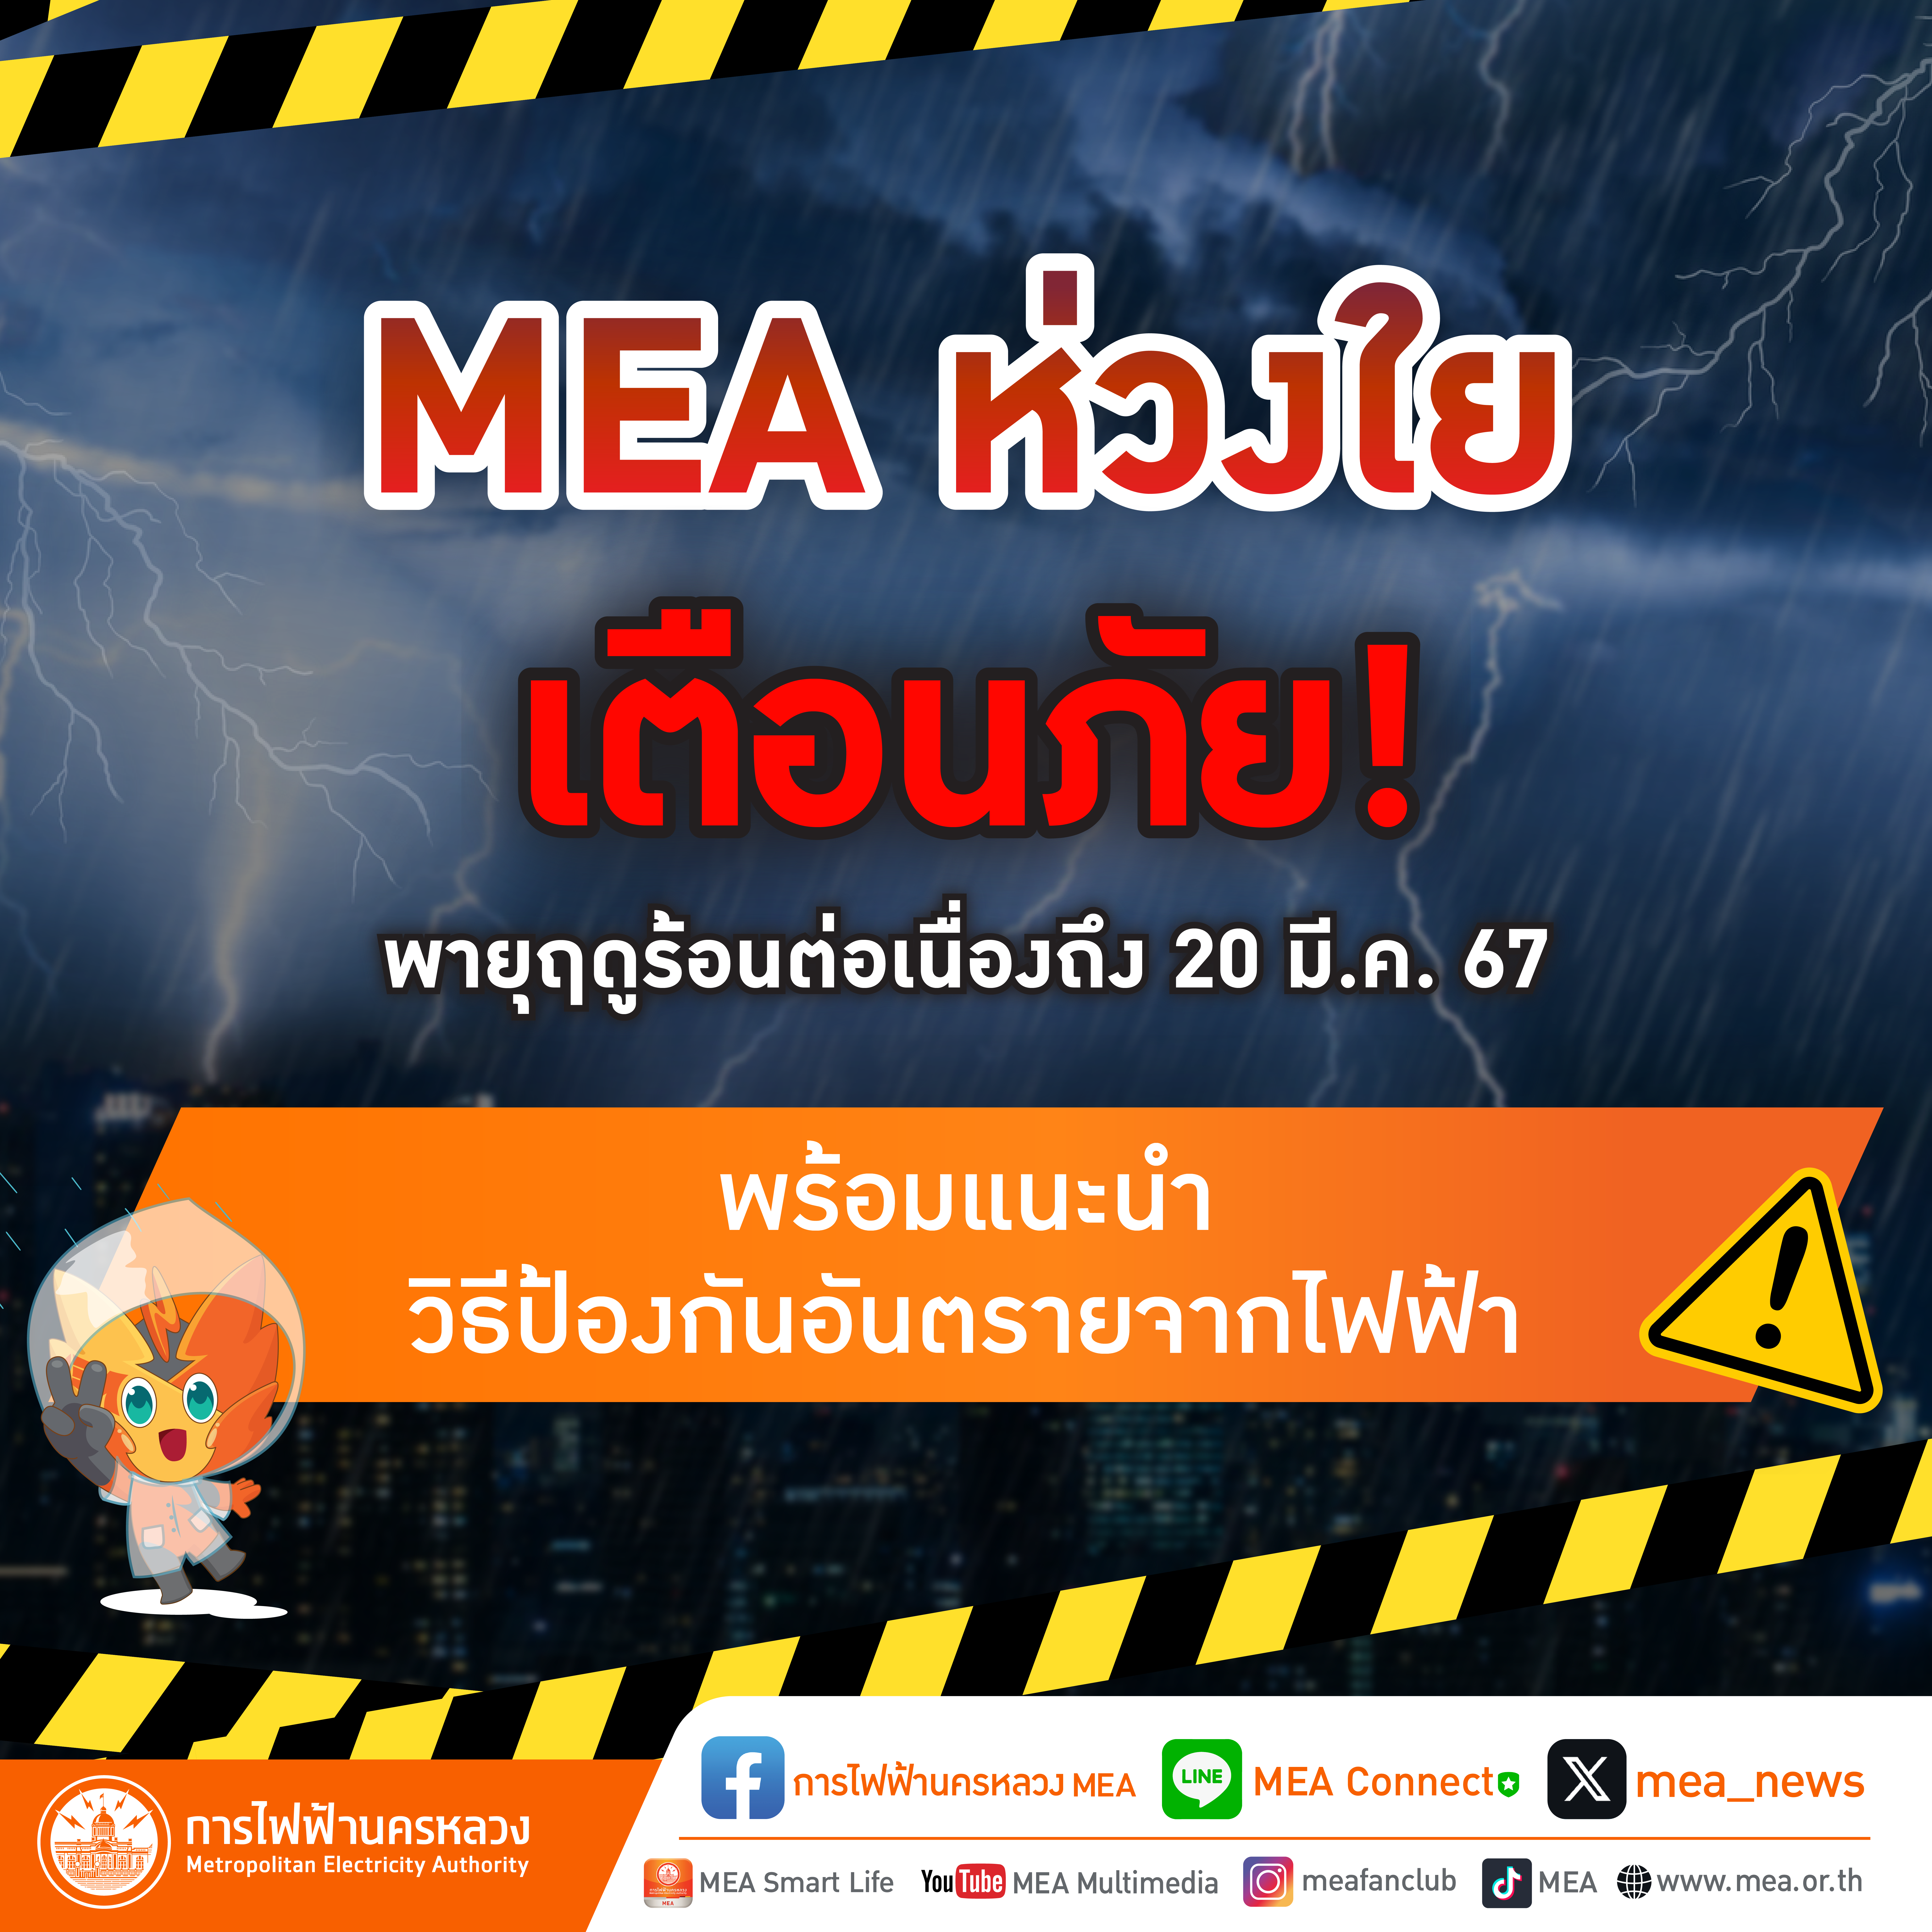 MEA ห่วงใย เตือนภัยพายุฤดูร้อนต่อเนื่องถึง 20 มี.ค. 67 พร้อมแนะนำวิธีป้องกันอันตรายจากไฟฟ้า